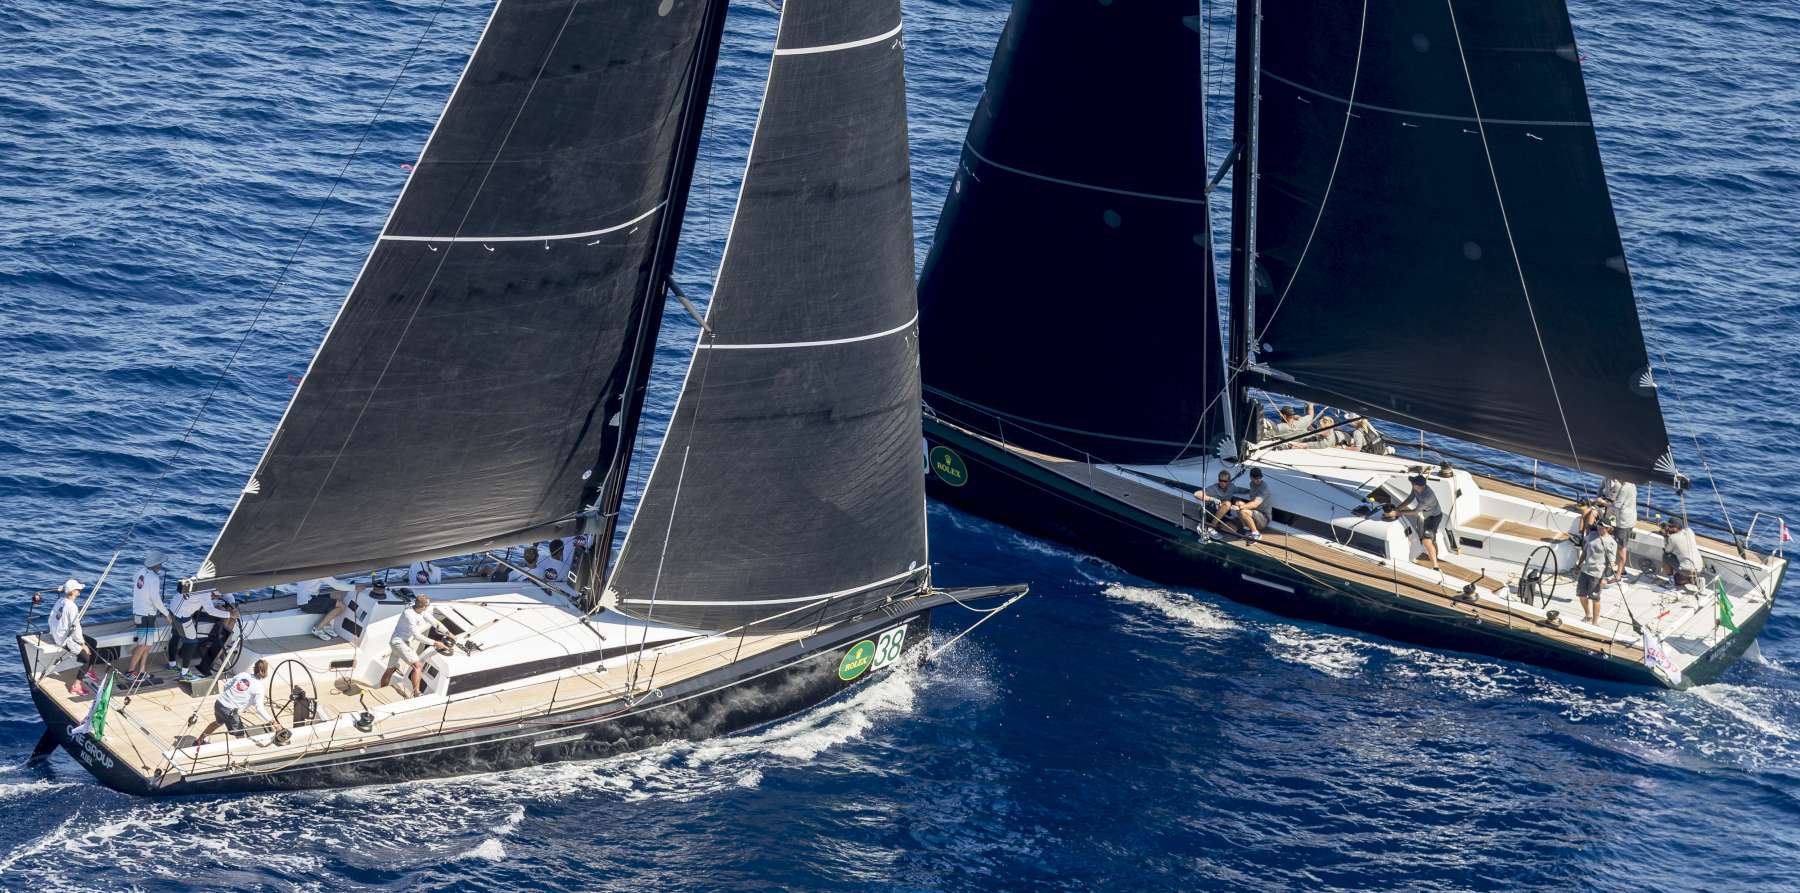 Il vento leggero non ferma la flotta della Rolex Swan Cup - Comunicati Stampa - Yacht Club Costa Smeralda